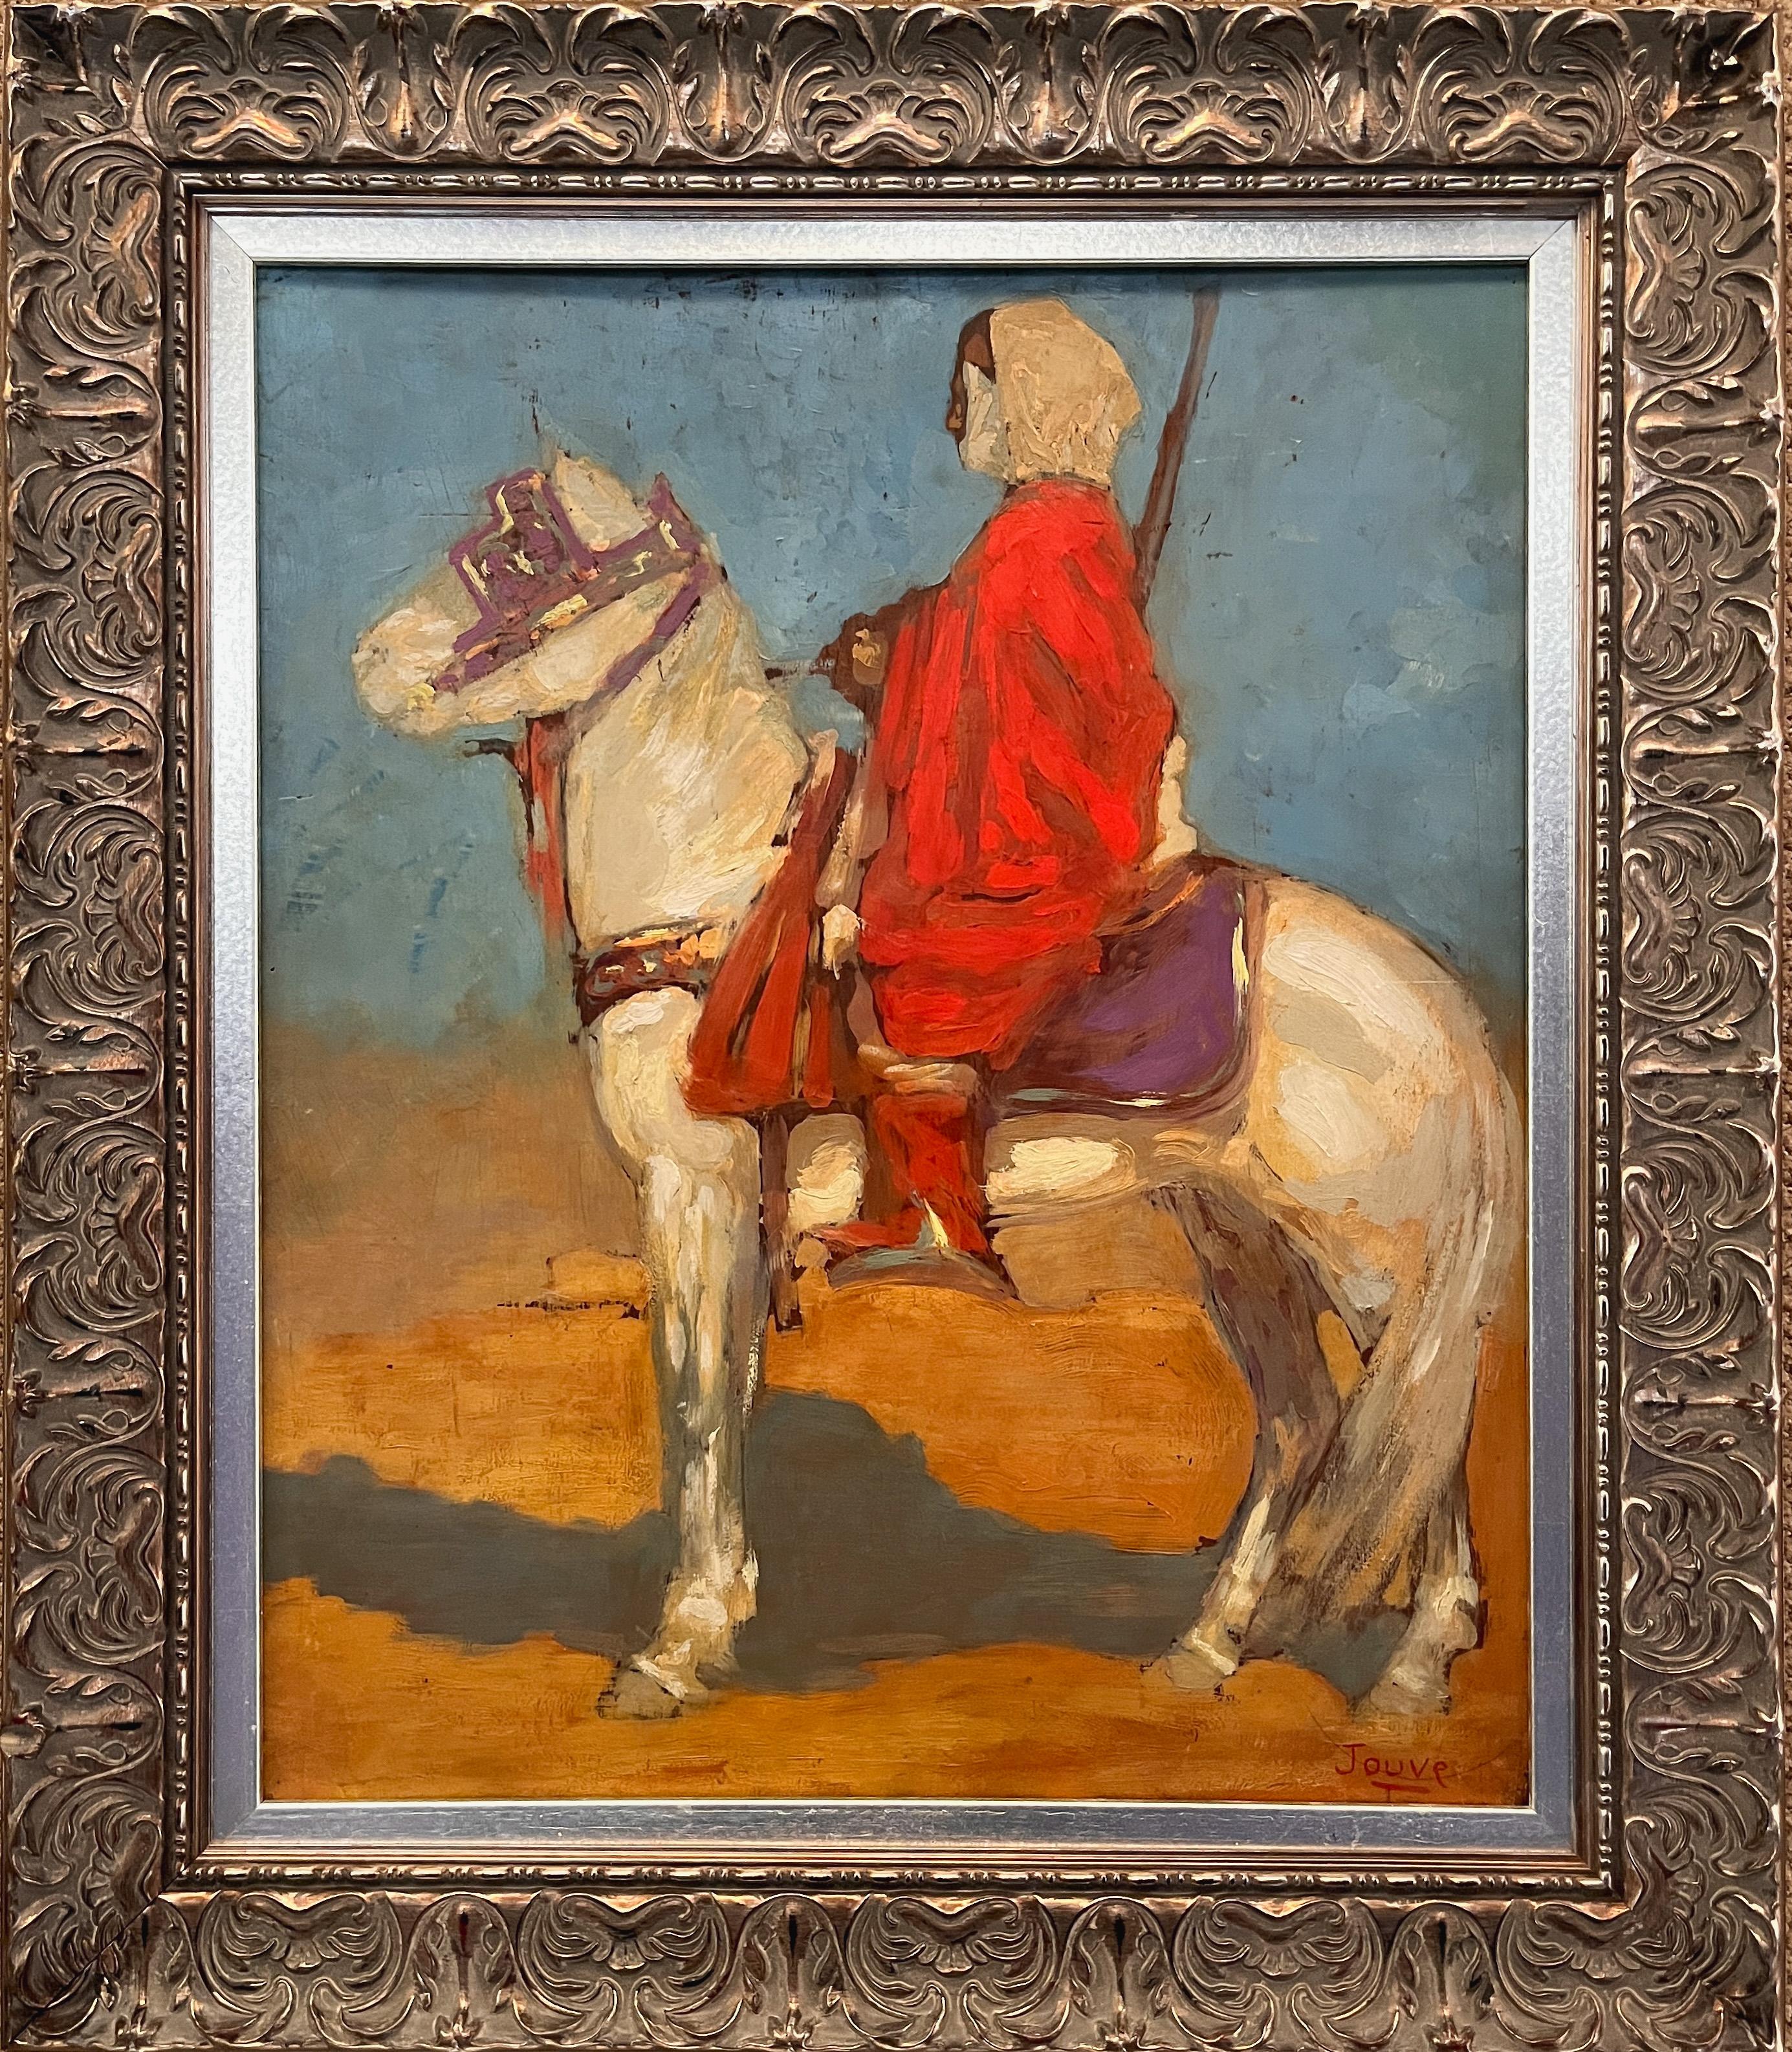 Pierre-Paul Jouve Landscape Painting - Orientalist Painting Tuareg Horse Rider in the Desert, 1908 by Paul Jouve